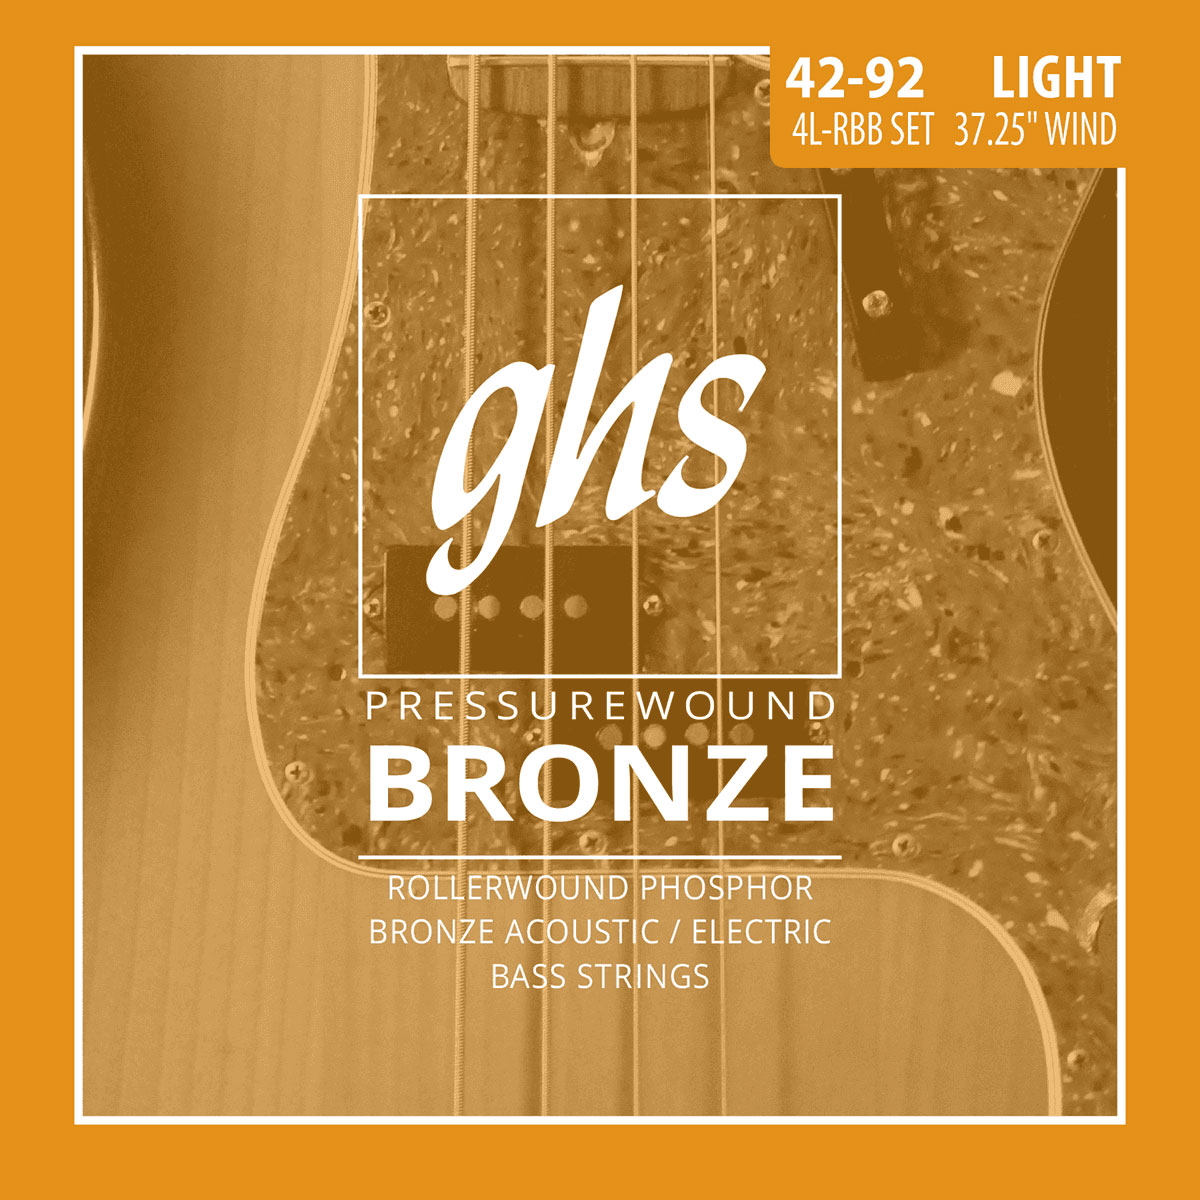 GHS 4L-RBB PRESSUREWOUND BRONZE LIGHT 42-92